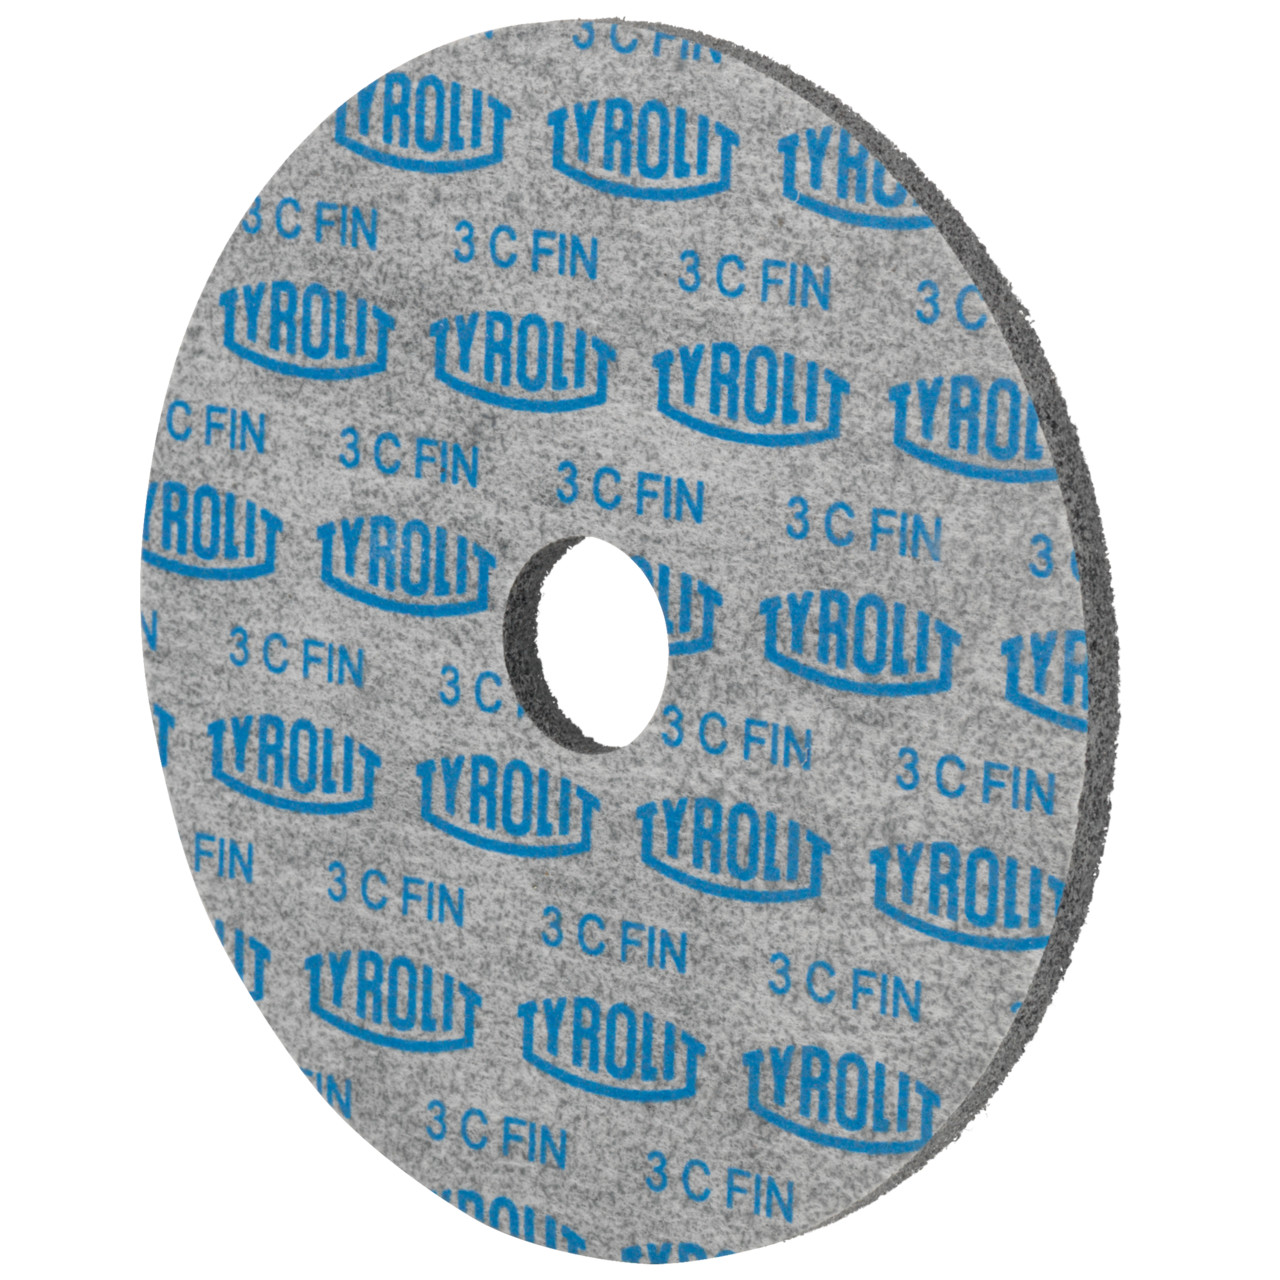 Tyrolit Discos compactos prensados DxDxH 127x6x22,2 De uso universal, 3 C FEIN, forma: 1, Art. 34190123